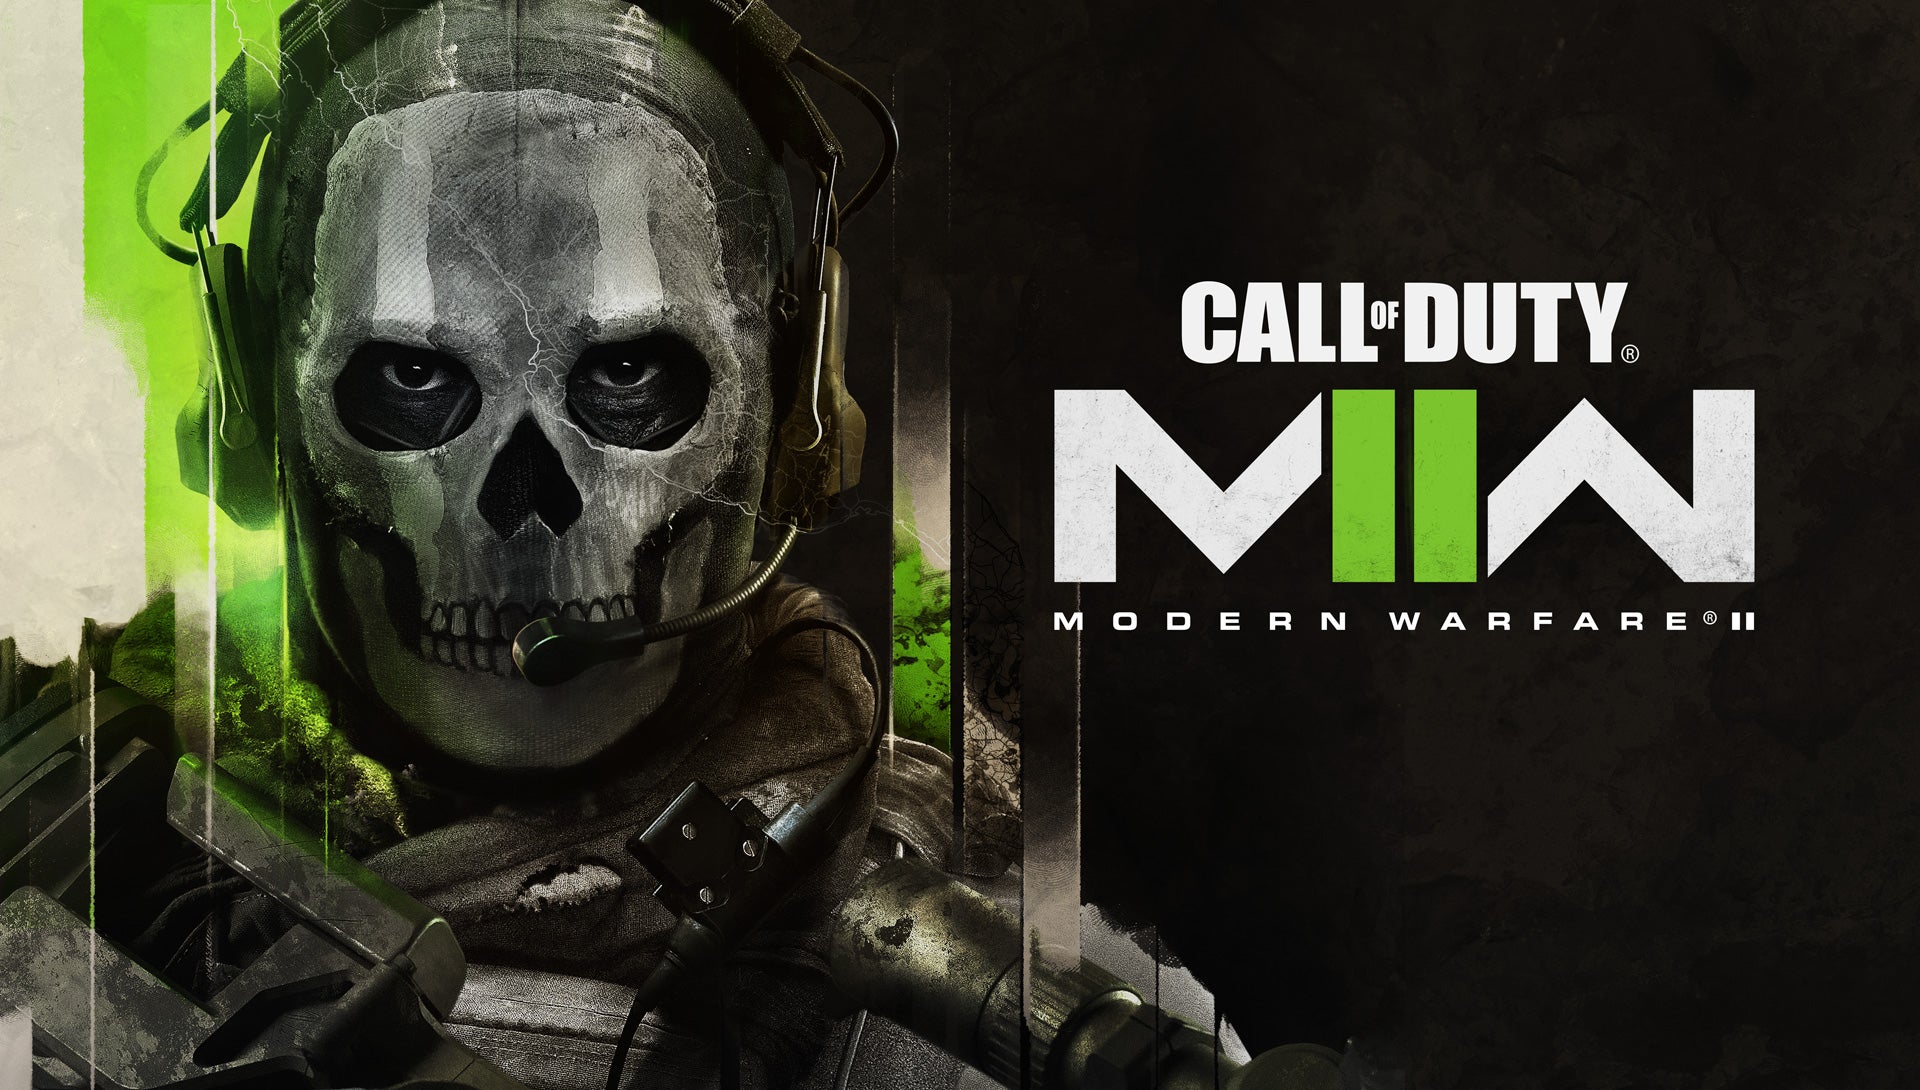 Aquí está el primer vistazo a Call of Duty: Modern Warfare 2, disponible el 28 de octubre
													
